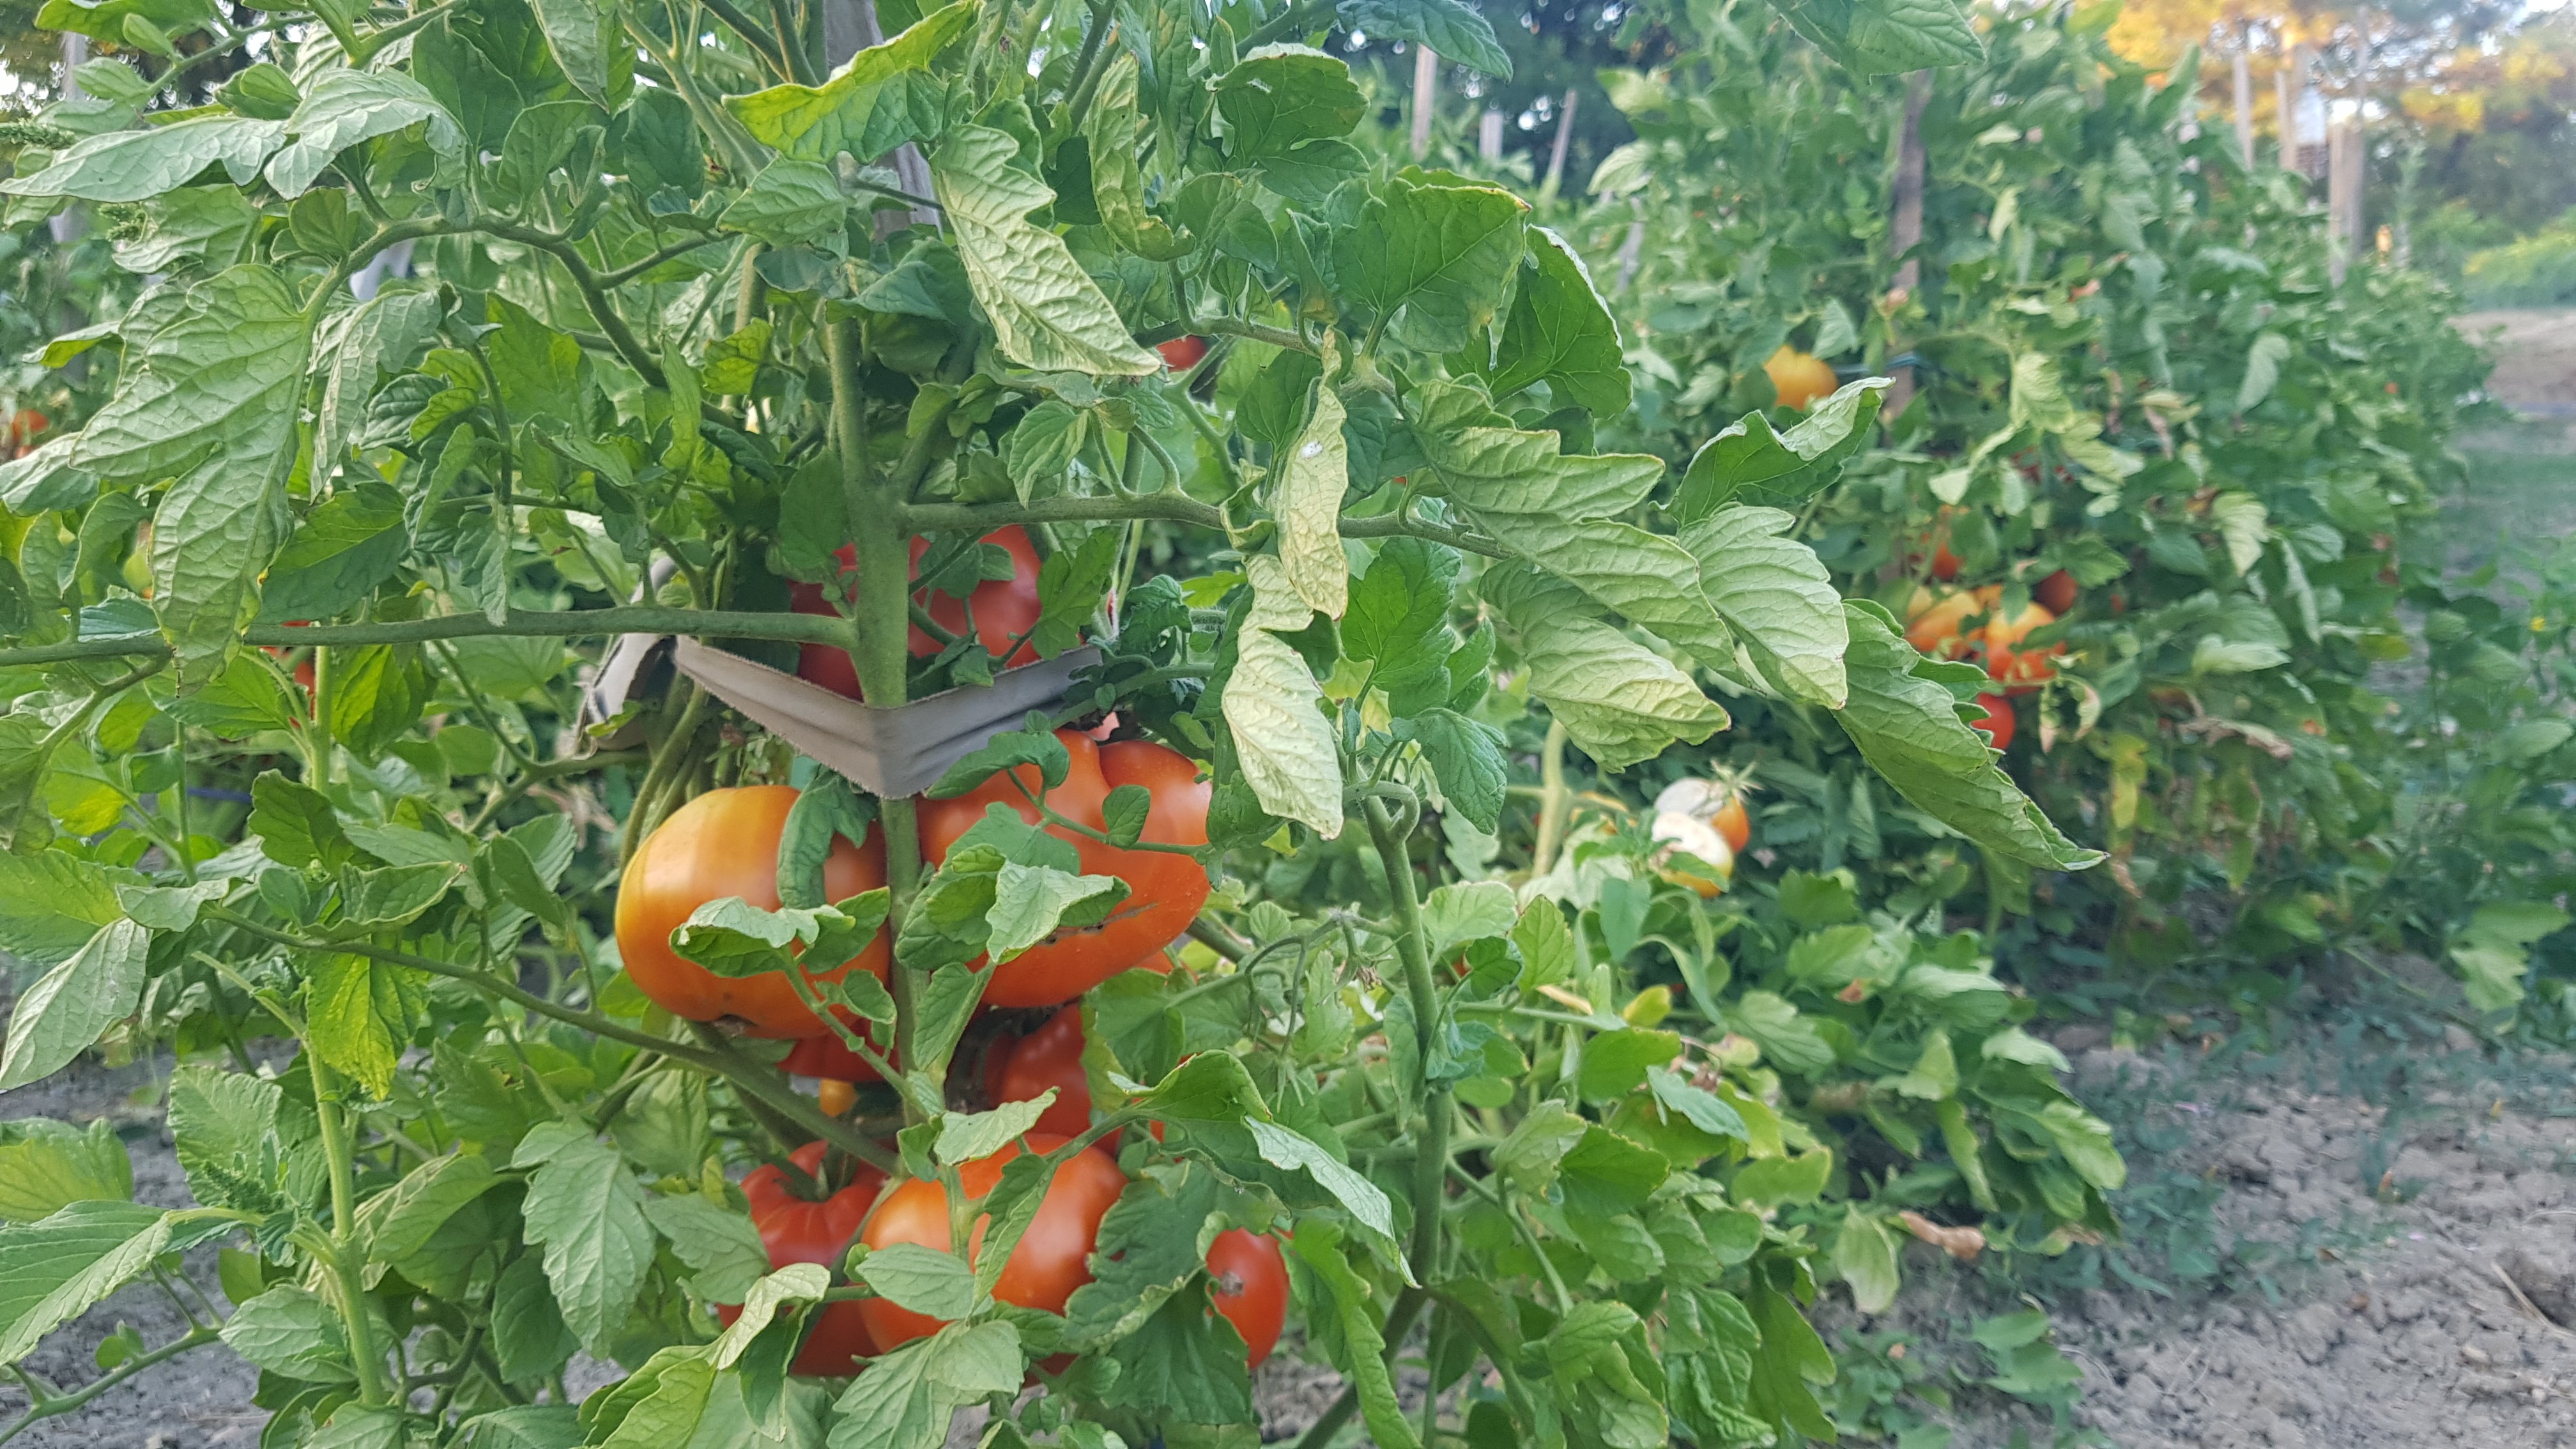 Coğrafi işaret tescilli maniye domatesi hasadı başladı! (2)